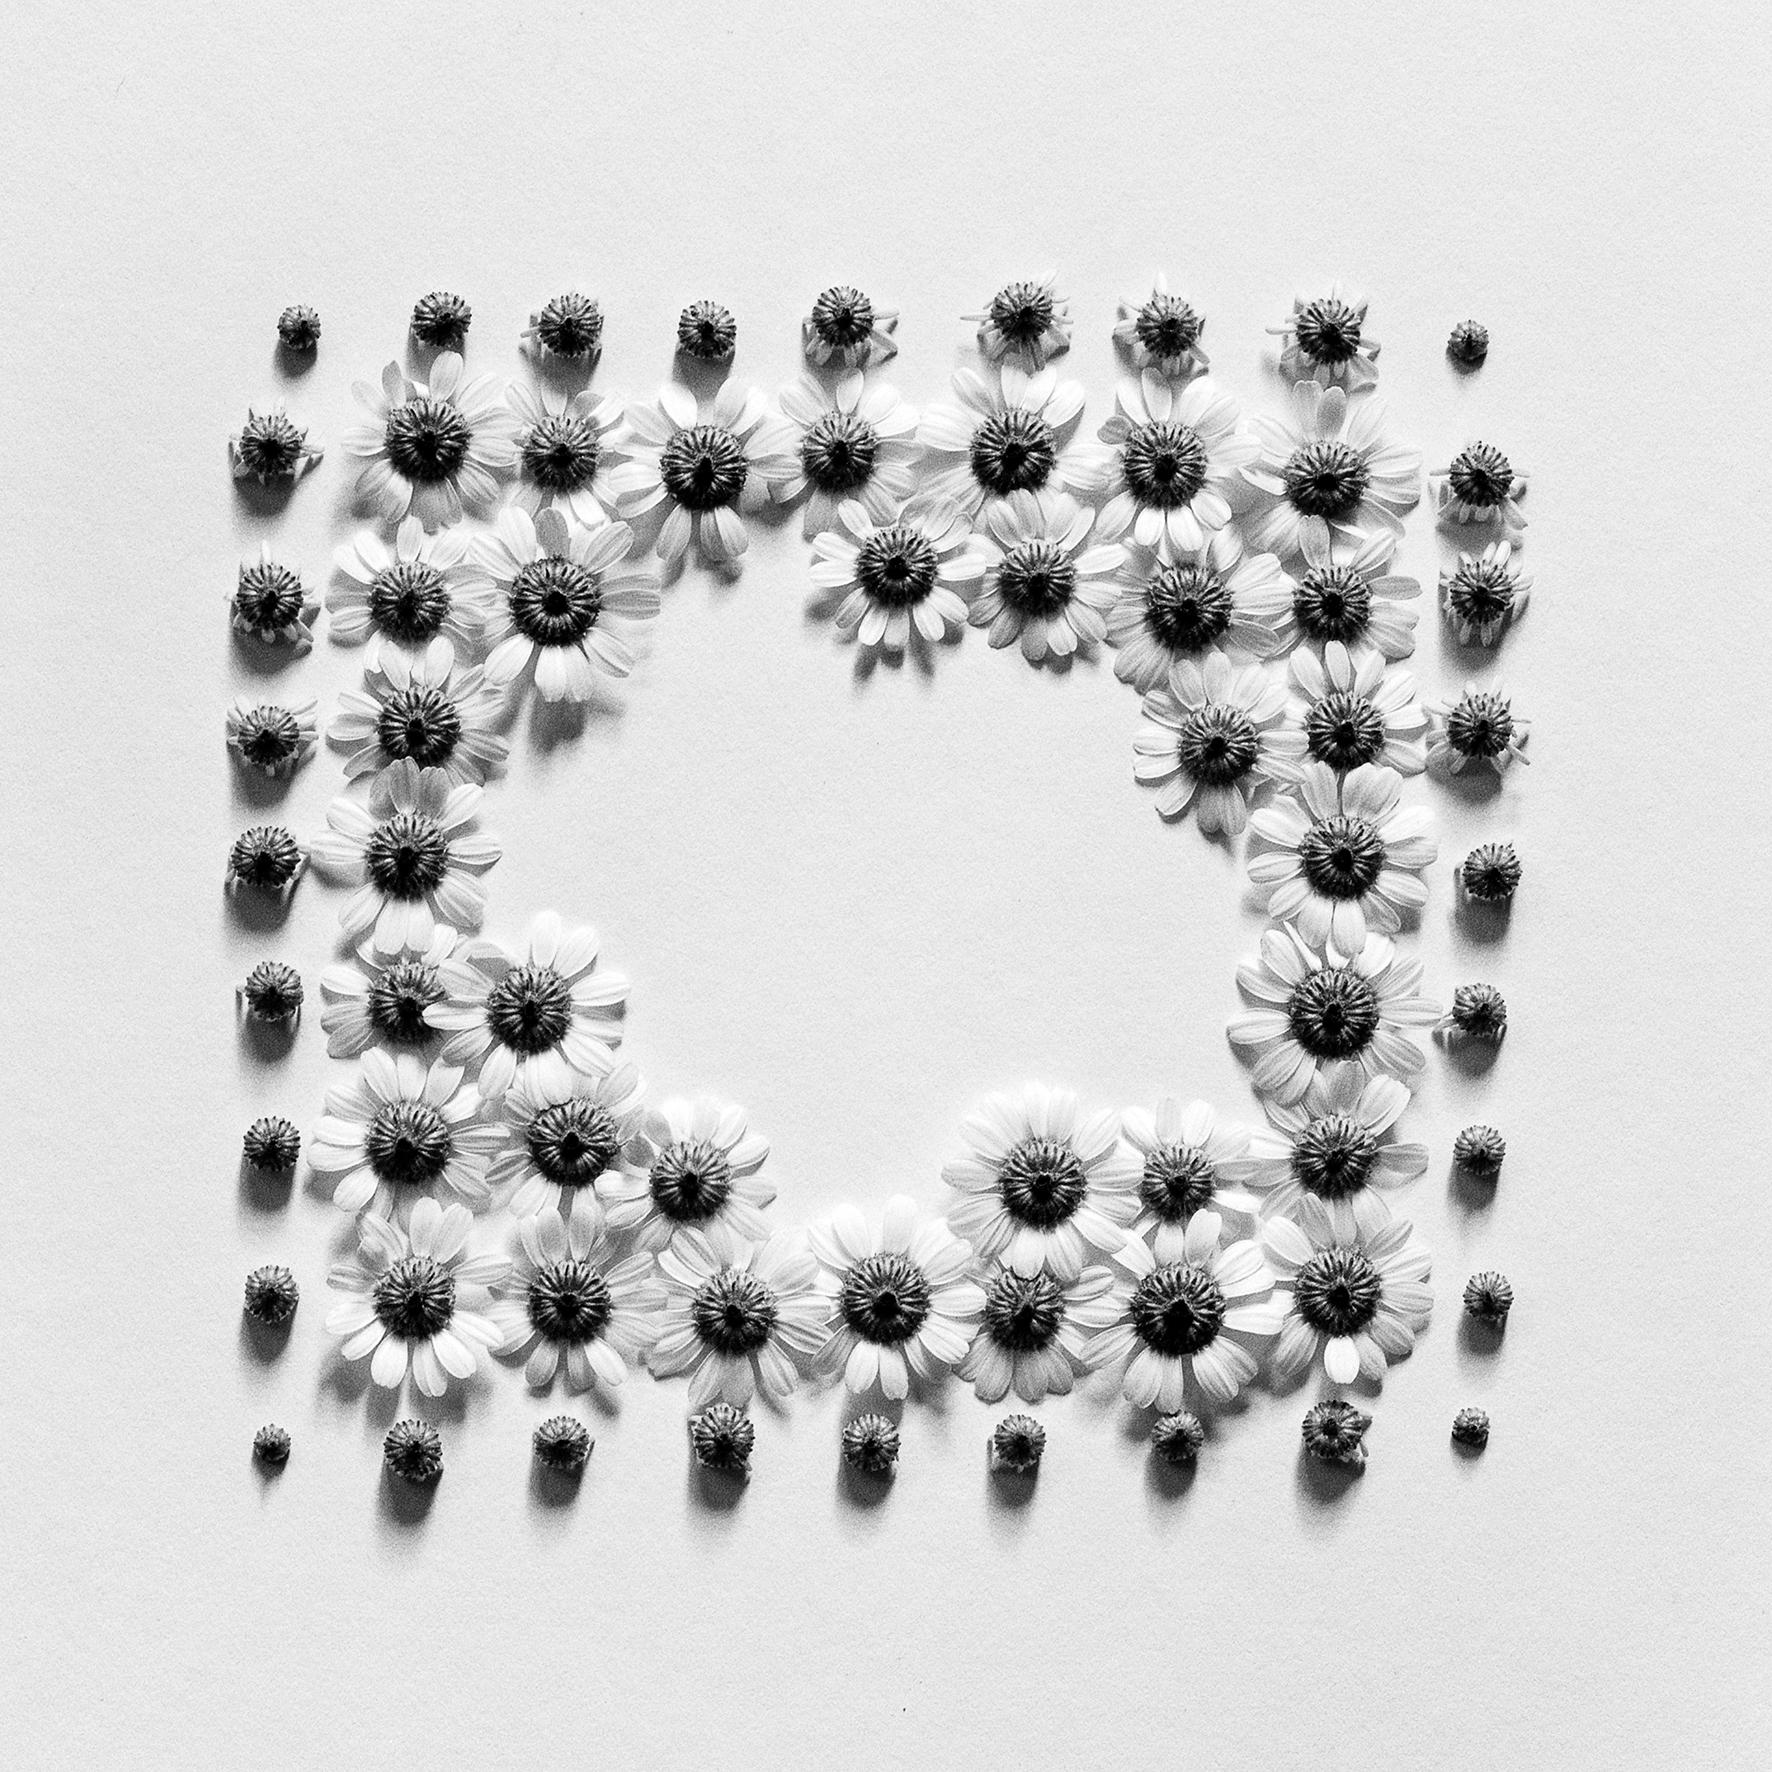 Ramunės - abstrakte analoge Schwarz-Weiß-Blumenfotografie, Ltd. 20